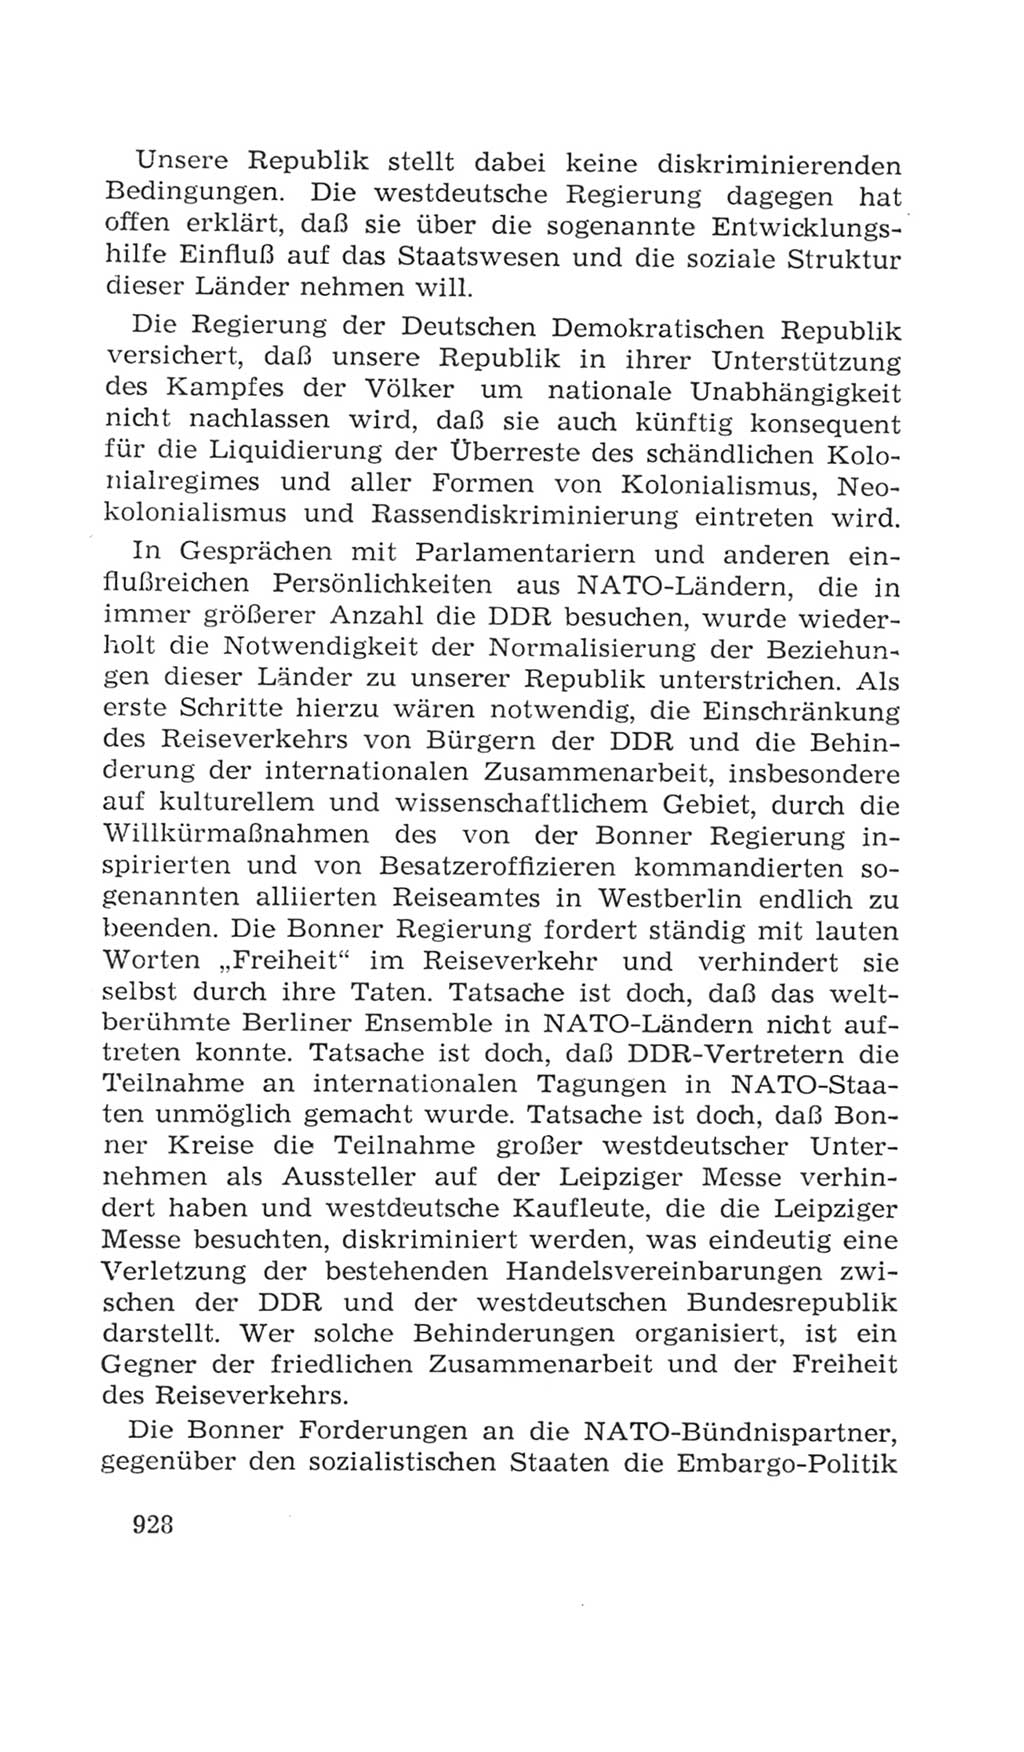 Volkskammer (VK) der Deutschen Demokratischen Republik (DDR), 4. Wahlperiode 1963-1967, Seite 928 (VK. DDR 4. WP. 1963-1967, S. 928)